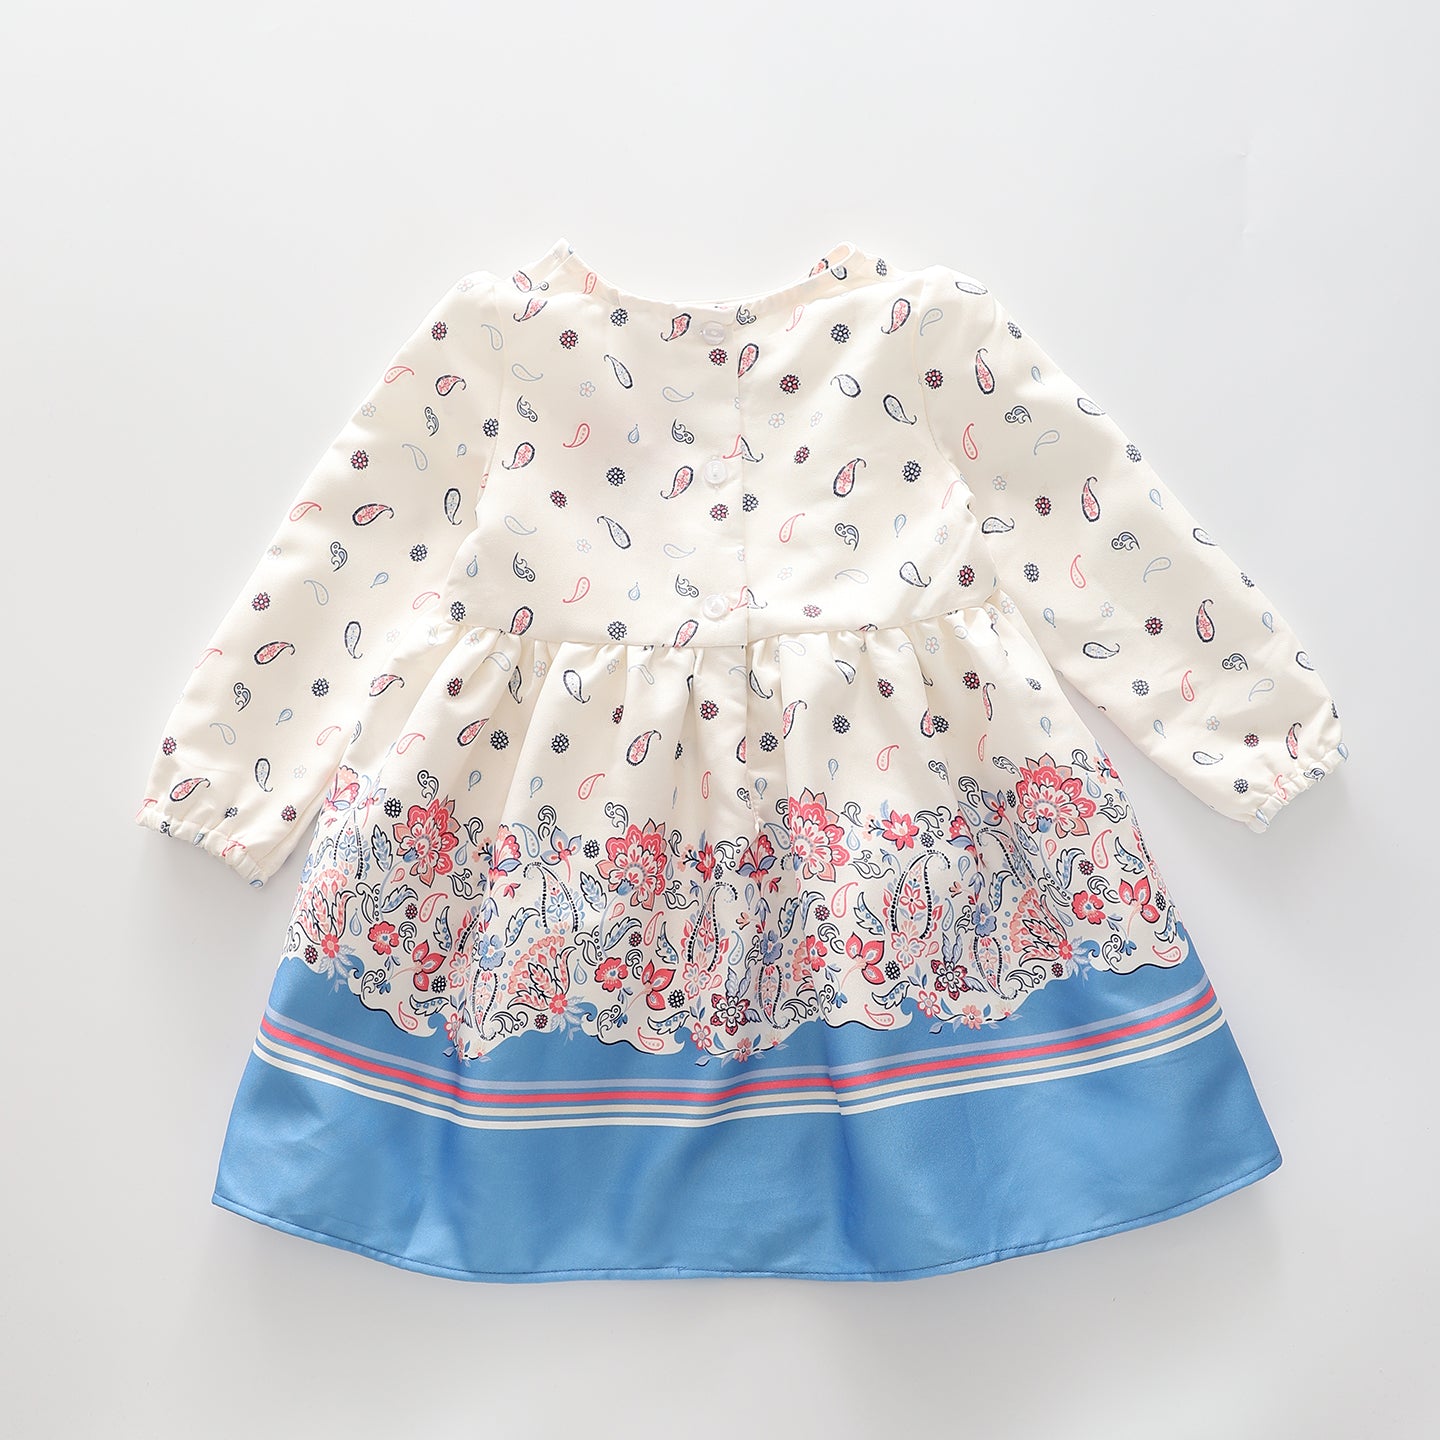 Girls' Paisley Print Chiffon Dress